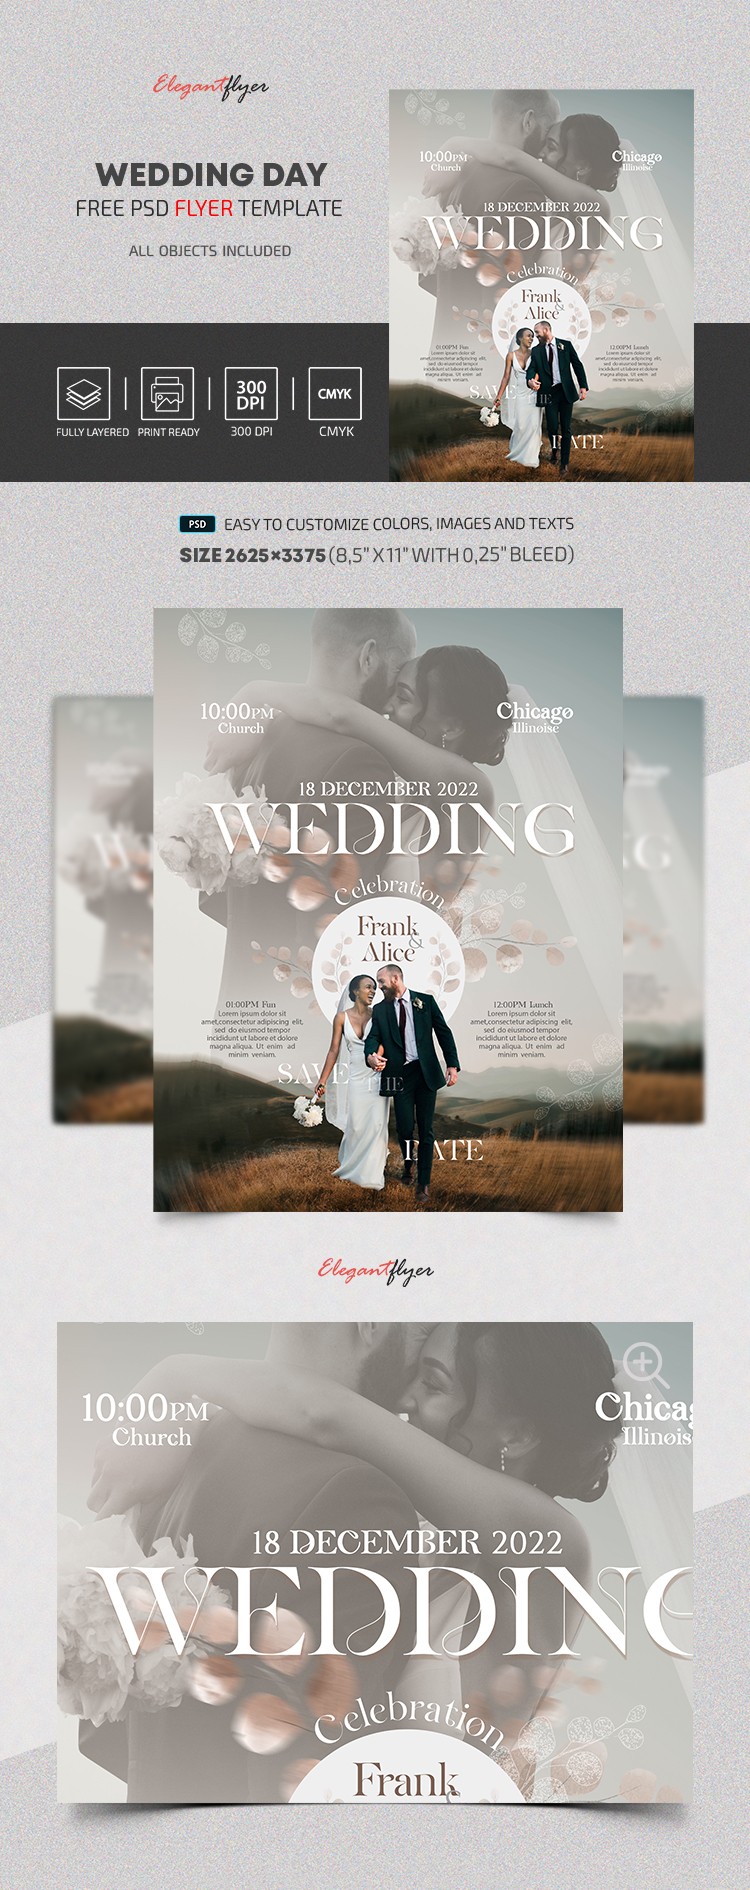 Wedding Day Flyer by ElegantFlyer